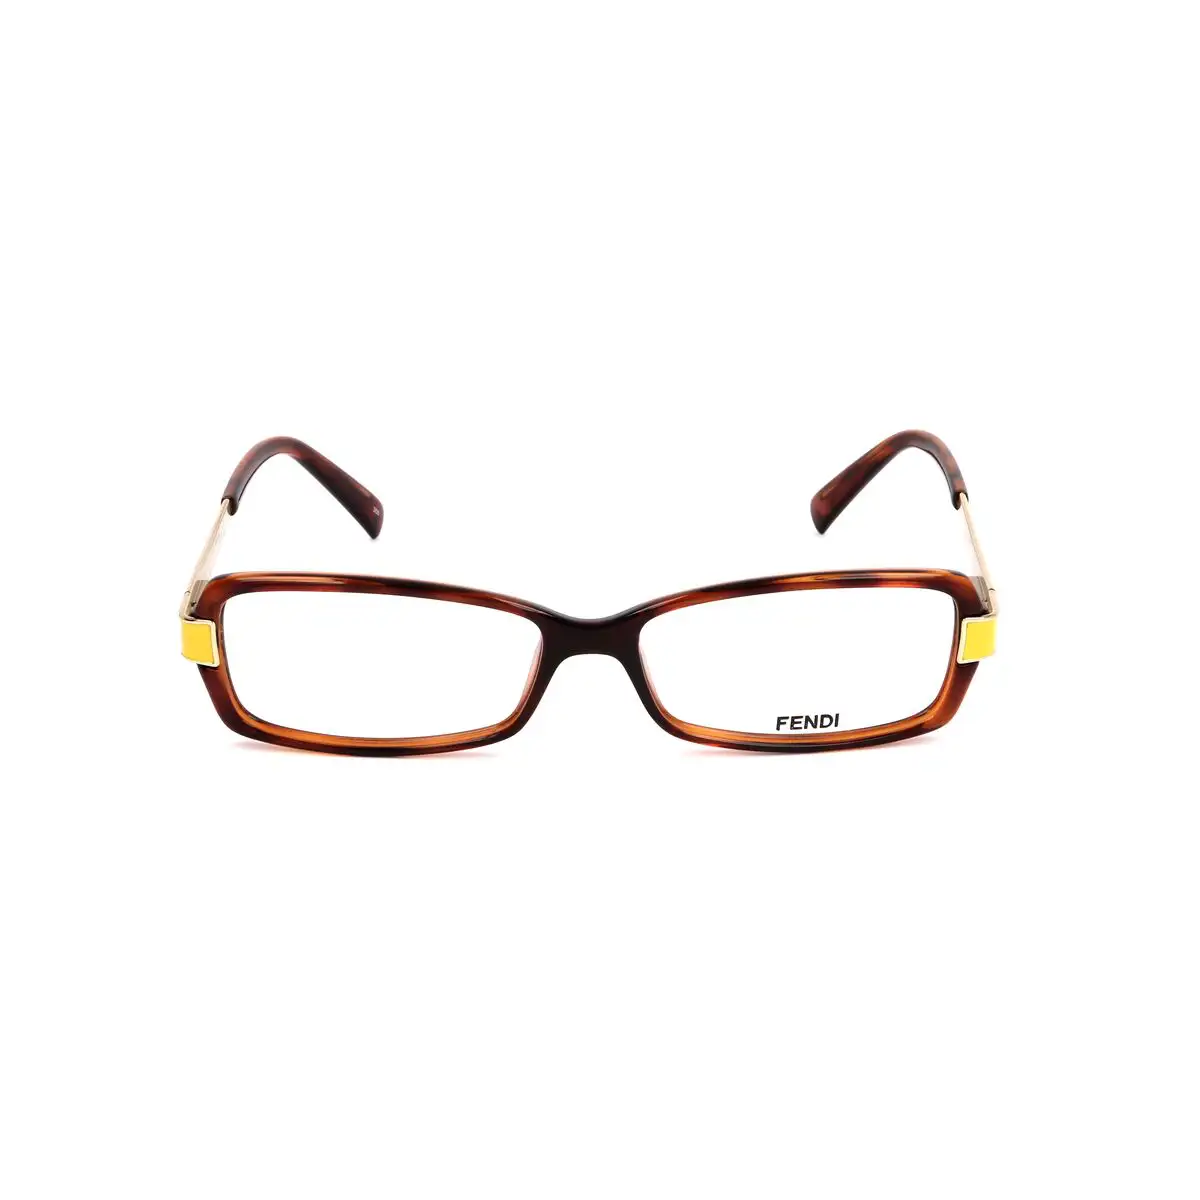 Monture de lunettes femme fendi fendi 103 23 havana_3890. DIAYTAR SENEGAL - Là où l'Élégance Devient un Mode de Vie. Naviguez à travers notre gamme et choisissez des produits qui apportent une touche raffinée à votre quotidien.